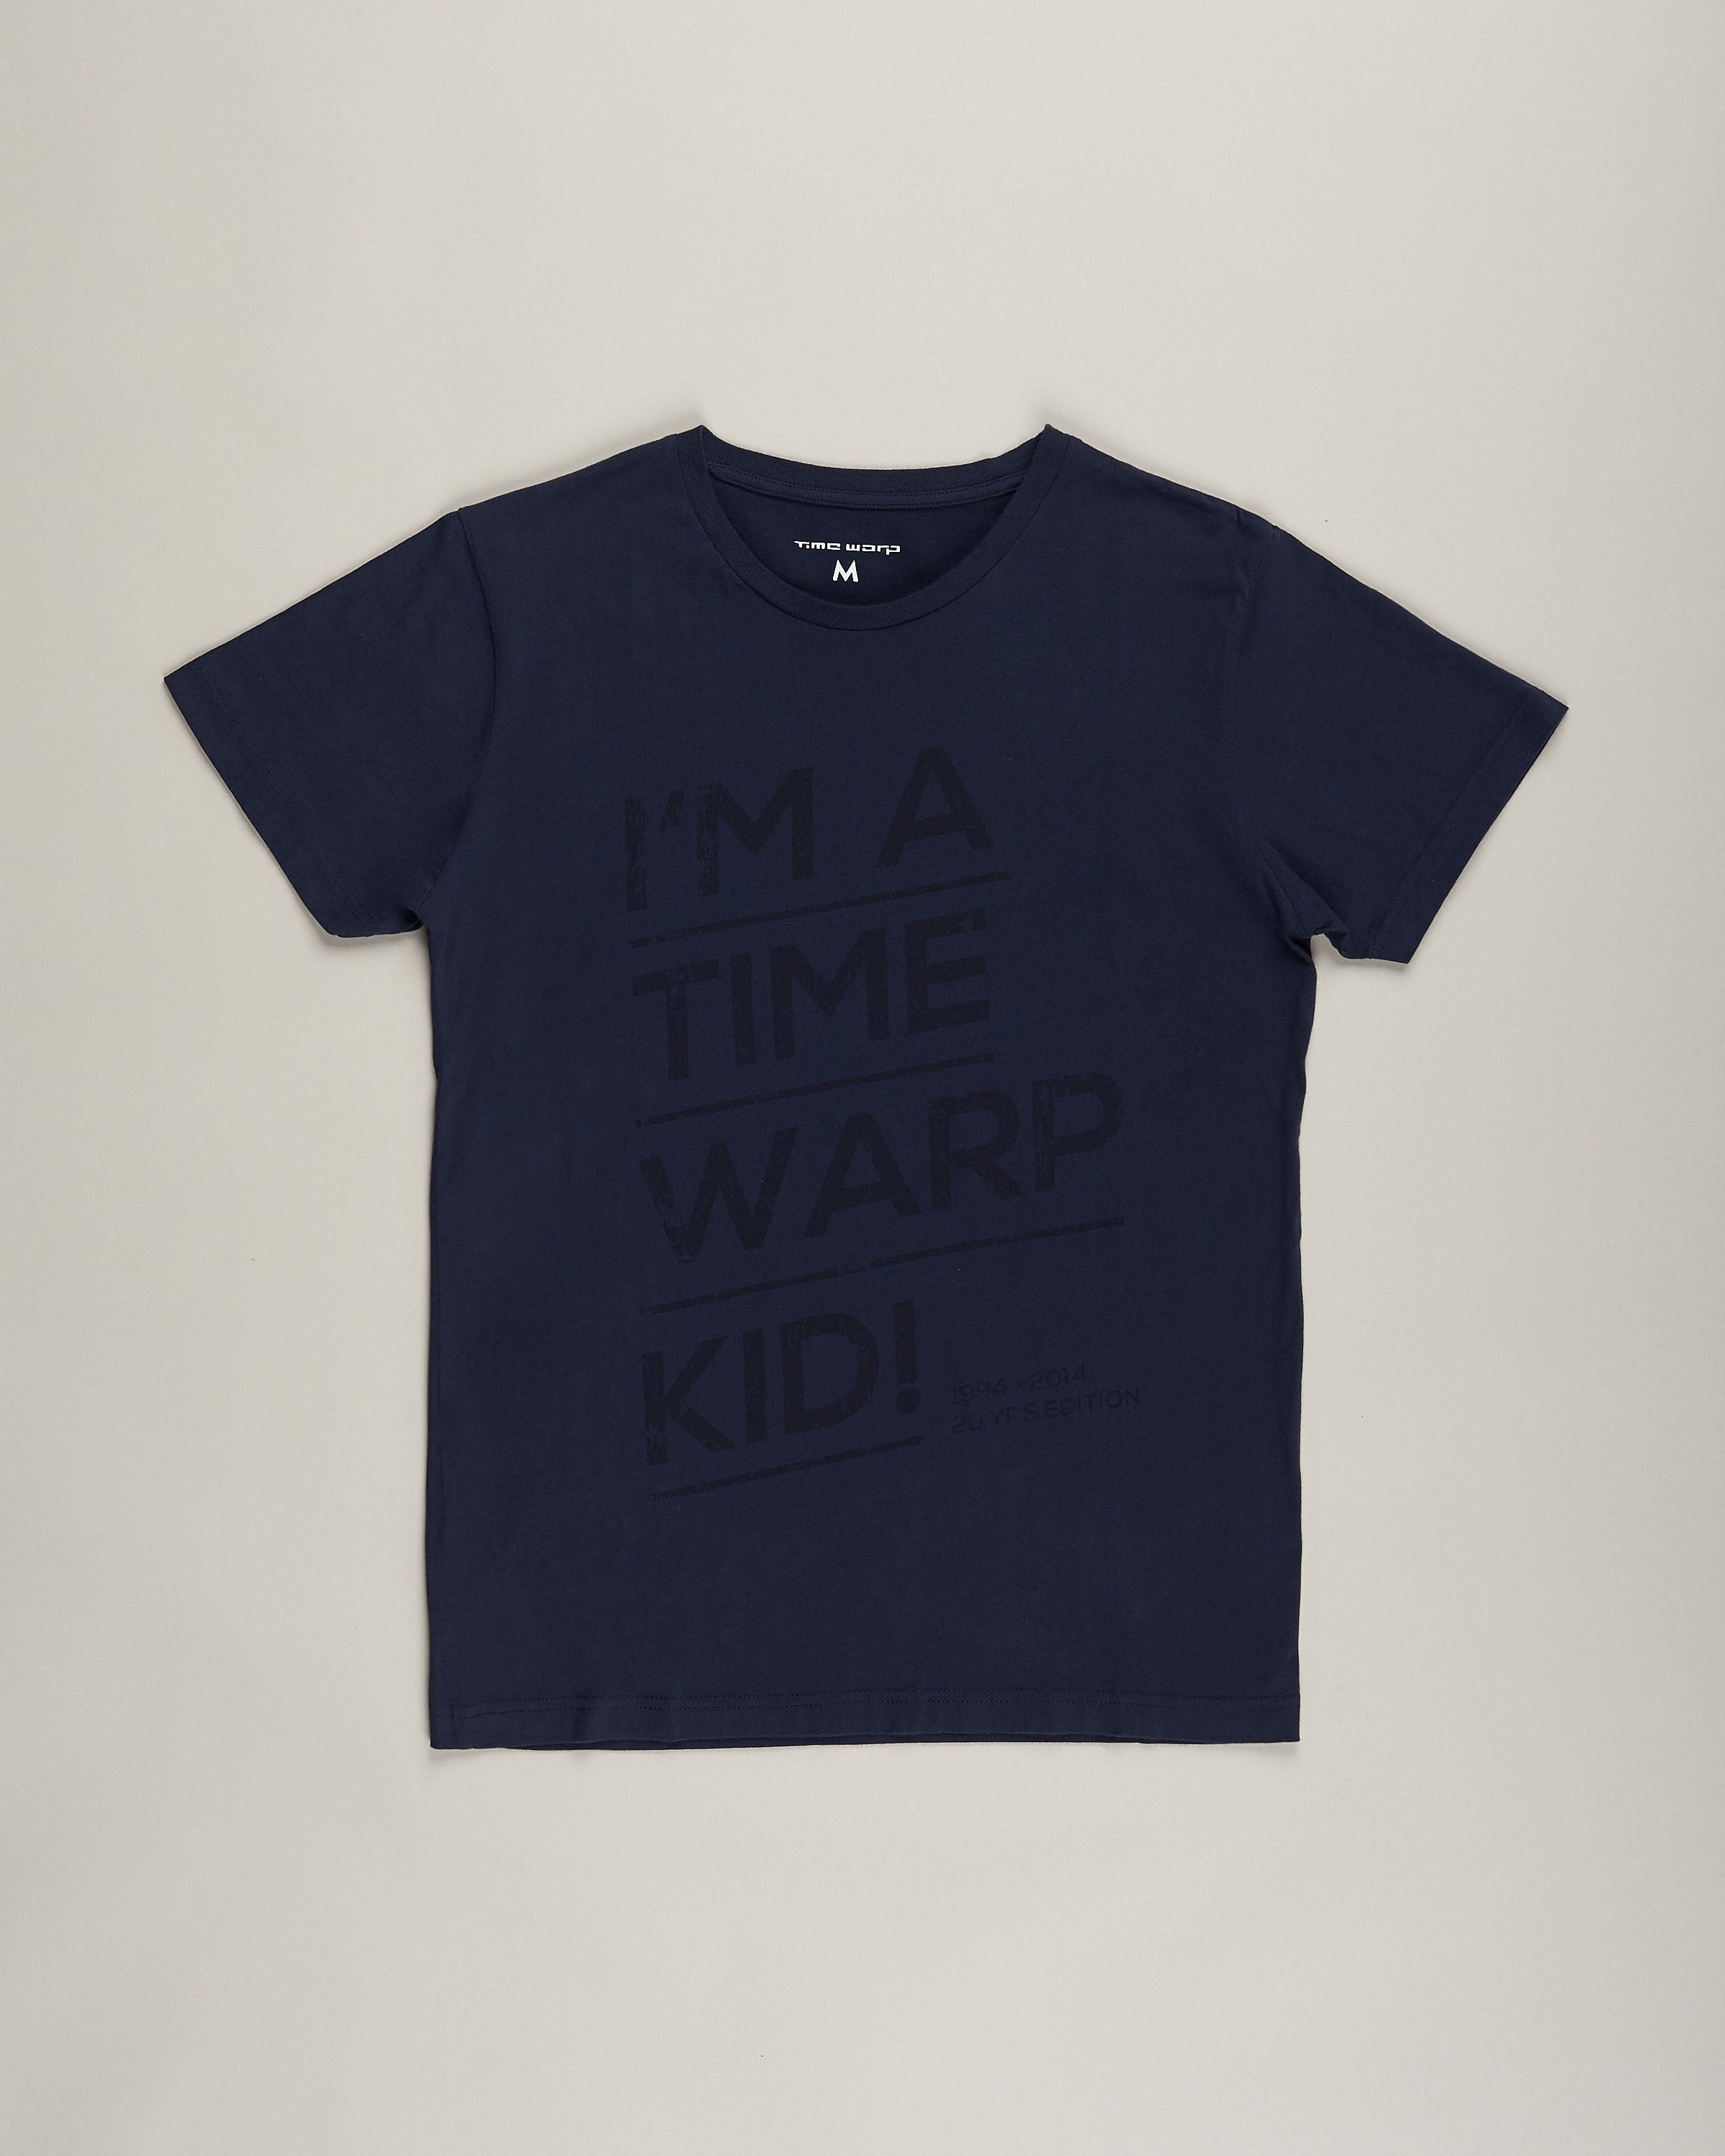 I Am A time Warp Kid T-Shirt.